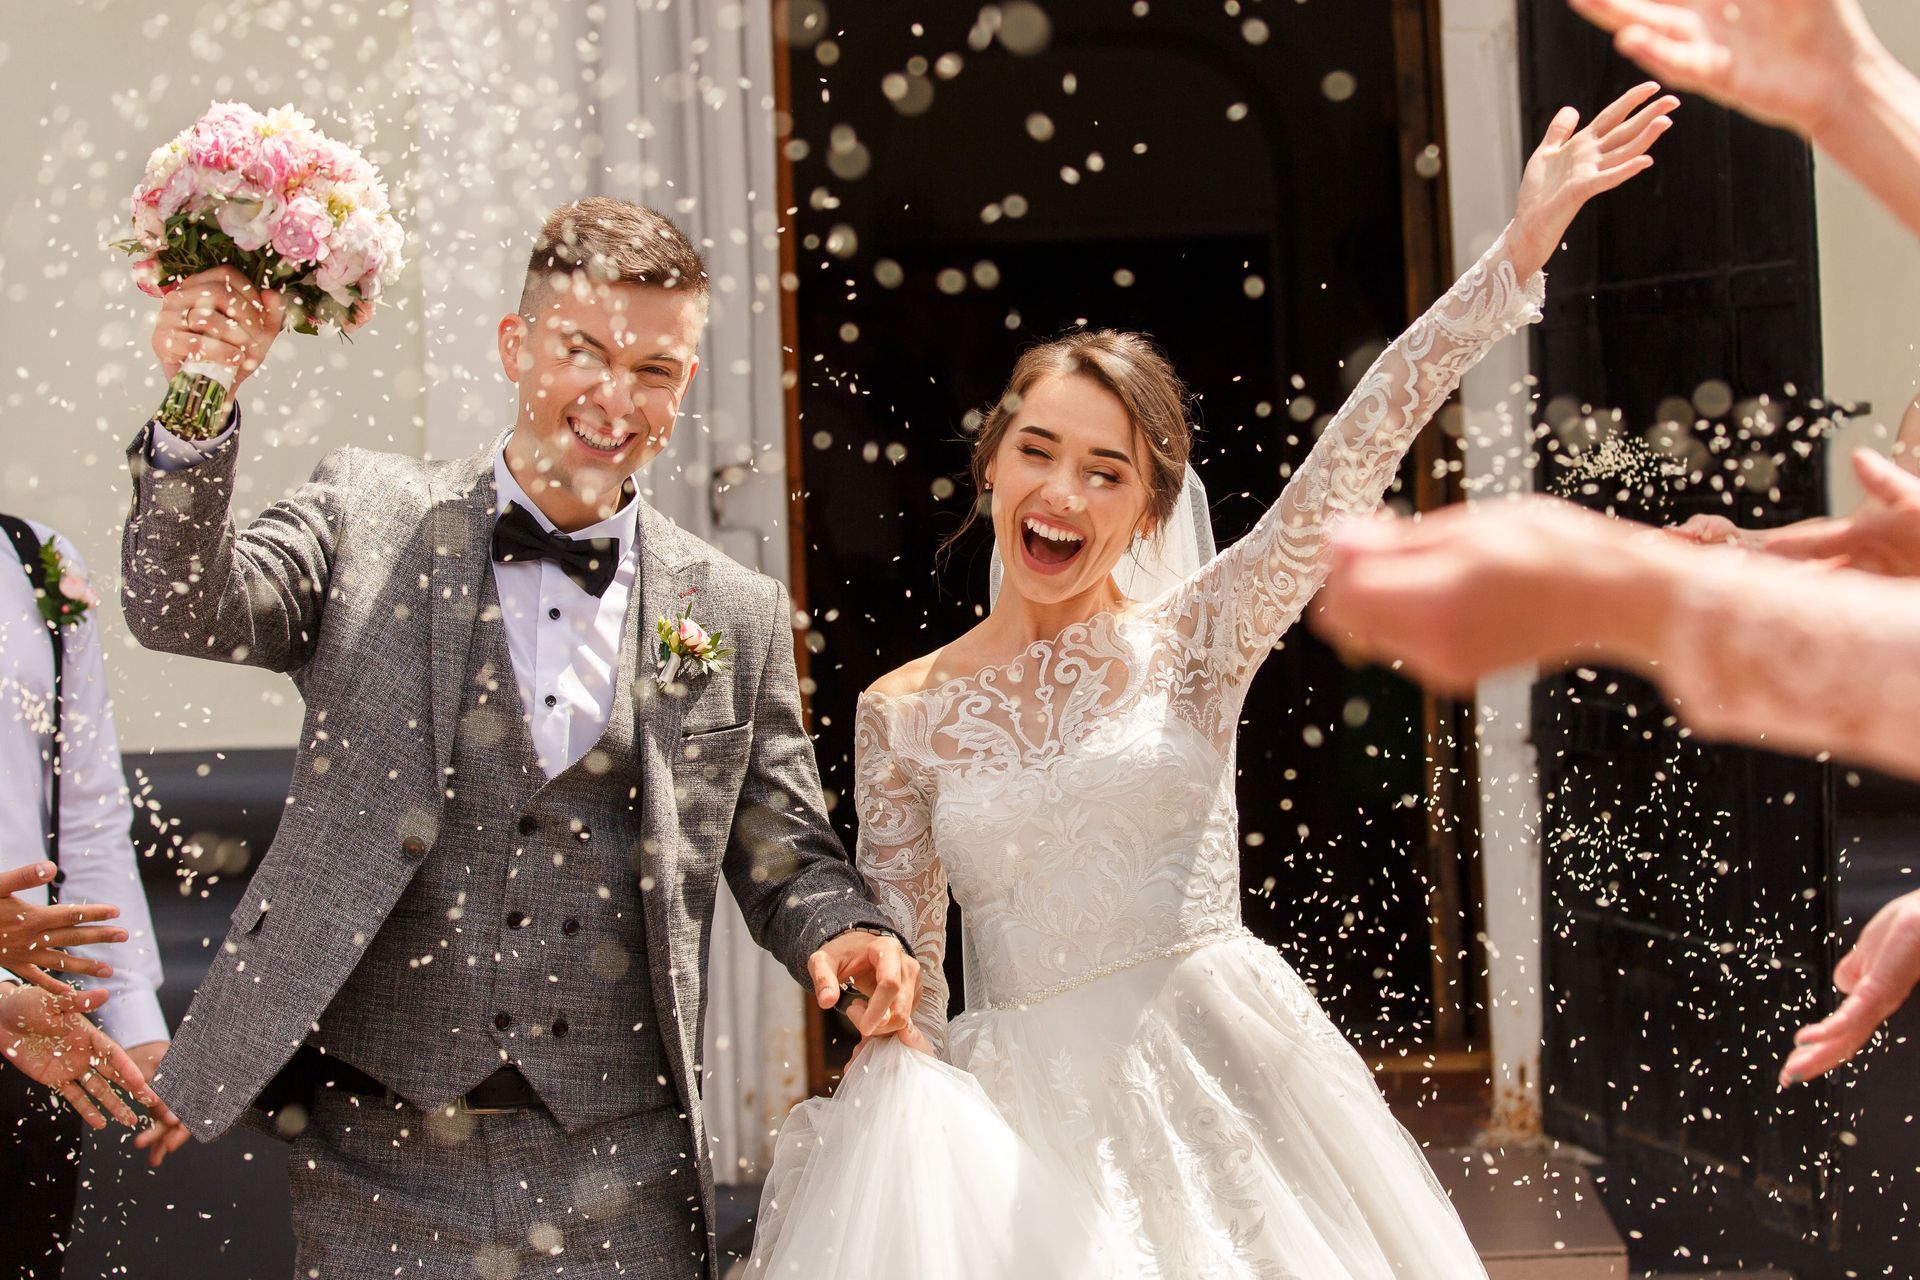 Checkliste zur Hochzeit – damit der schönste Tag perfekt wird